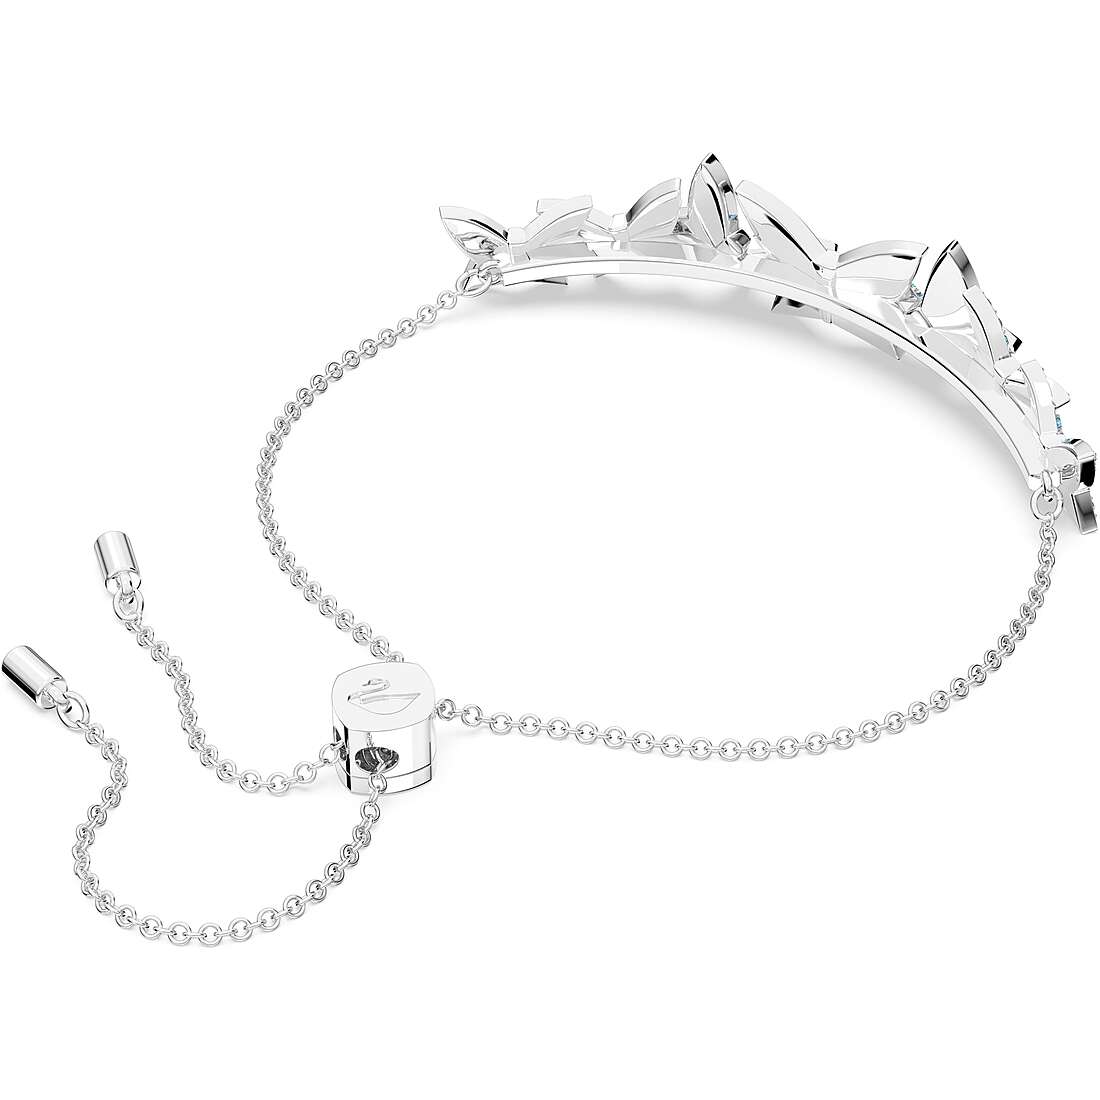 Armband Charms/Beads frau Silber 925 Schmuck Swarovski 5662184